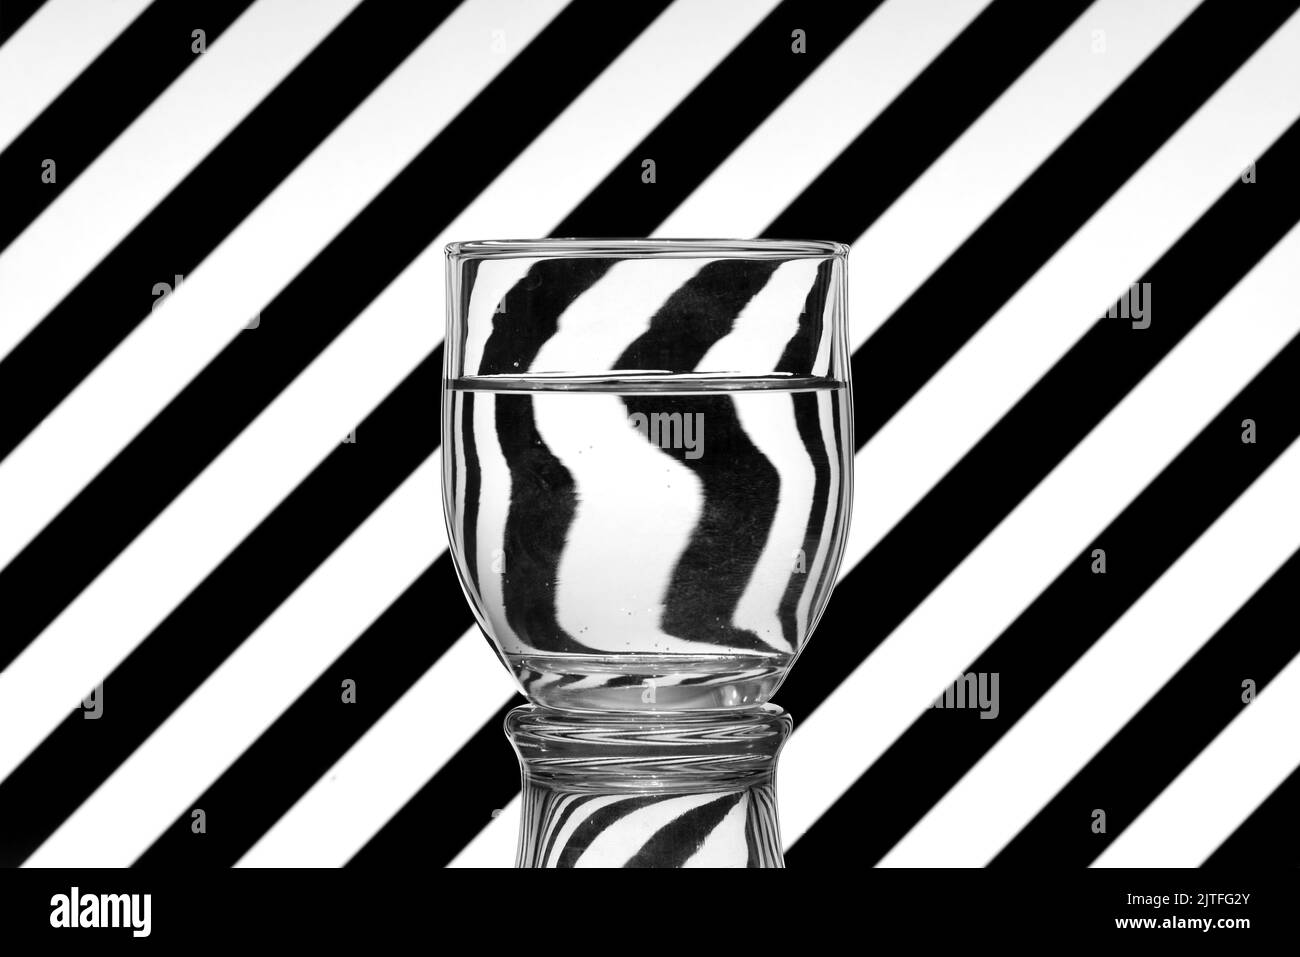 Ilusión óptica creada mediante la refracción de la luz, lineas oblicuas en Blanco y Negro reflejadas en un vaso de agua Stockfoto